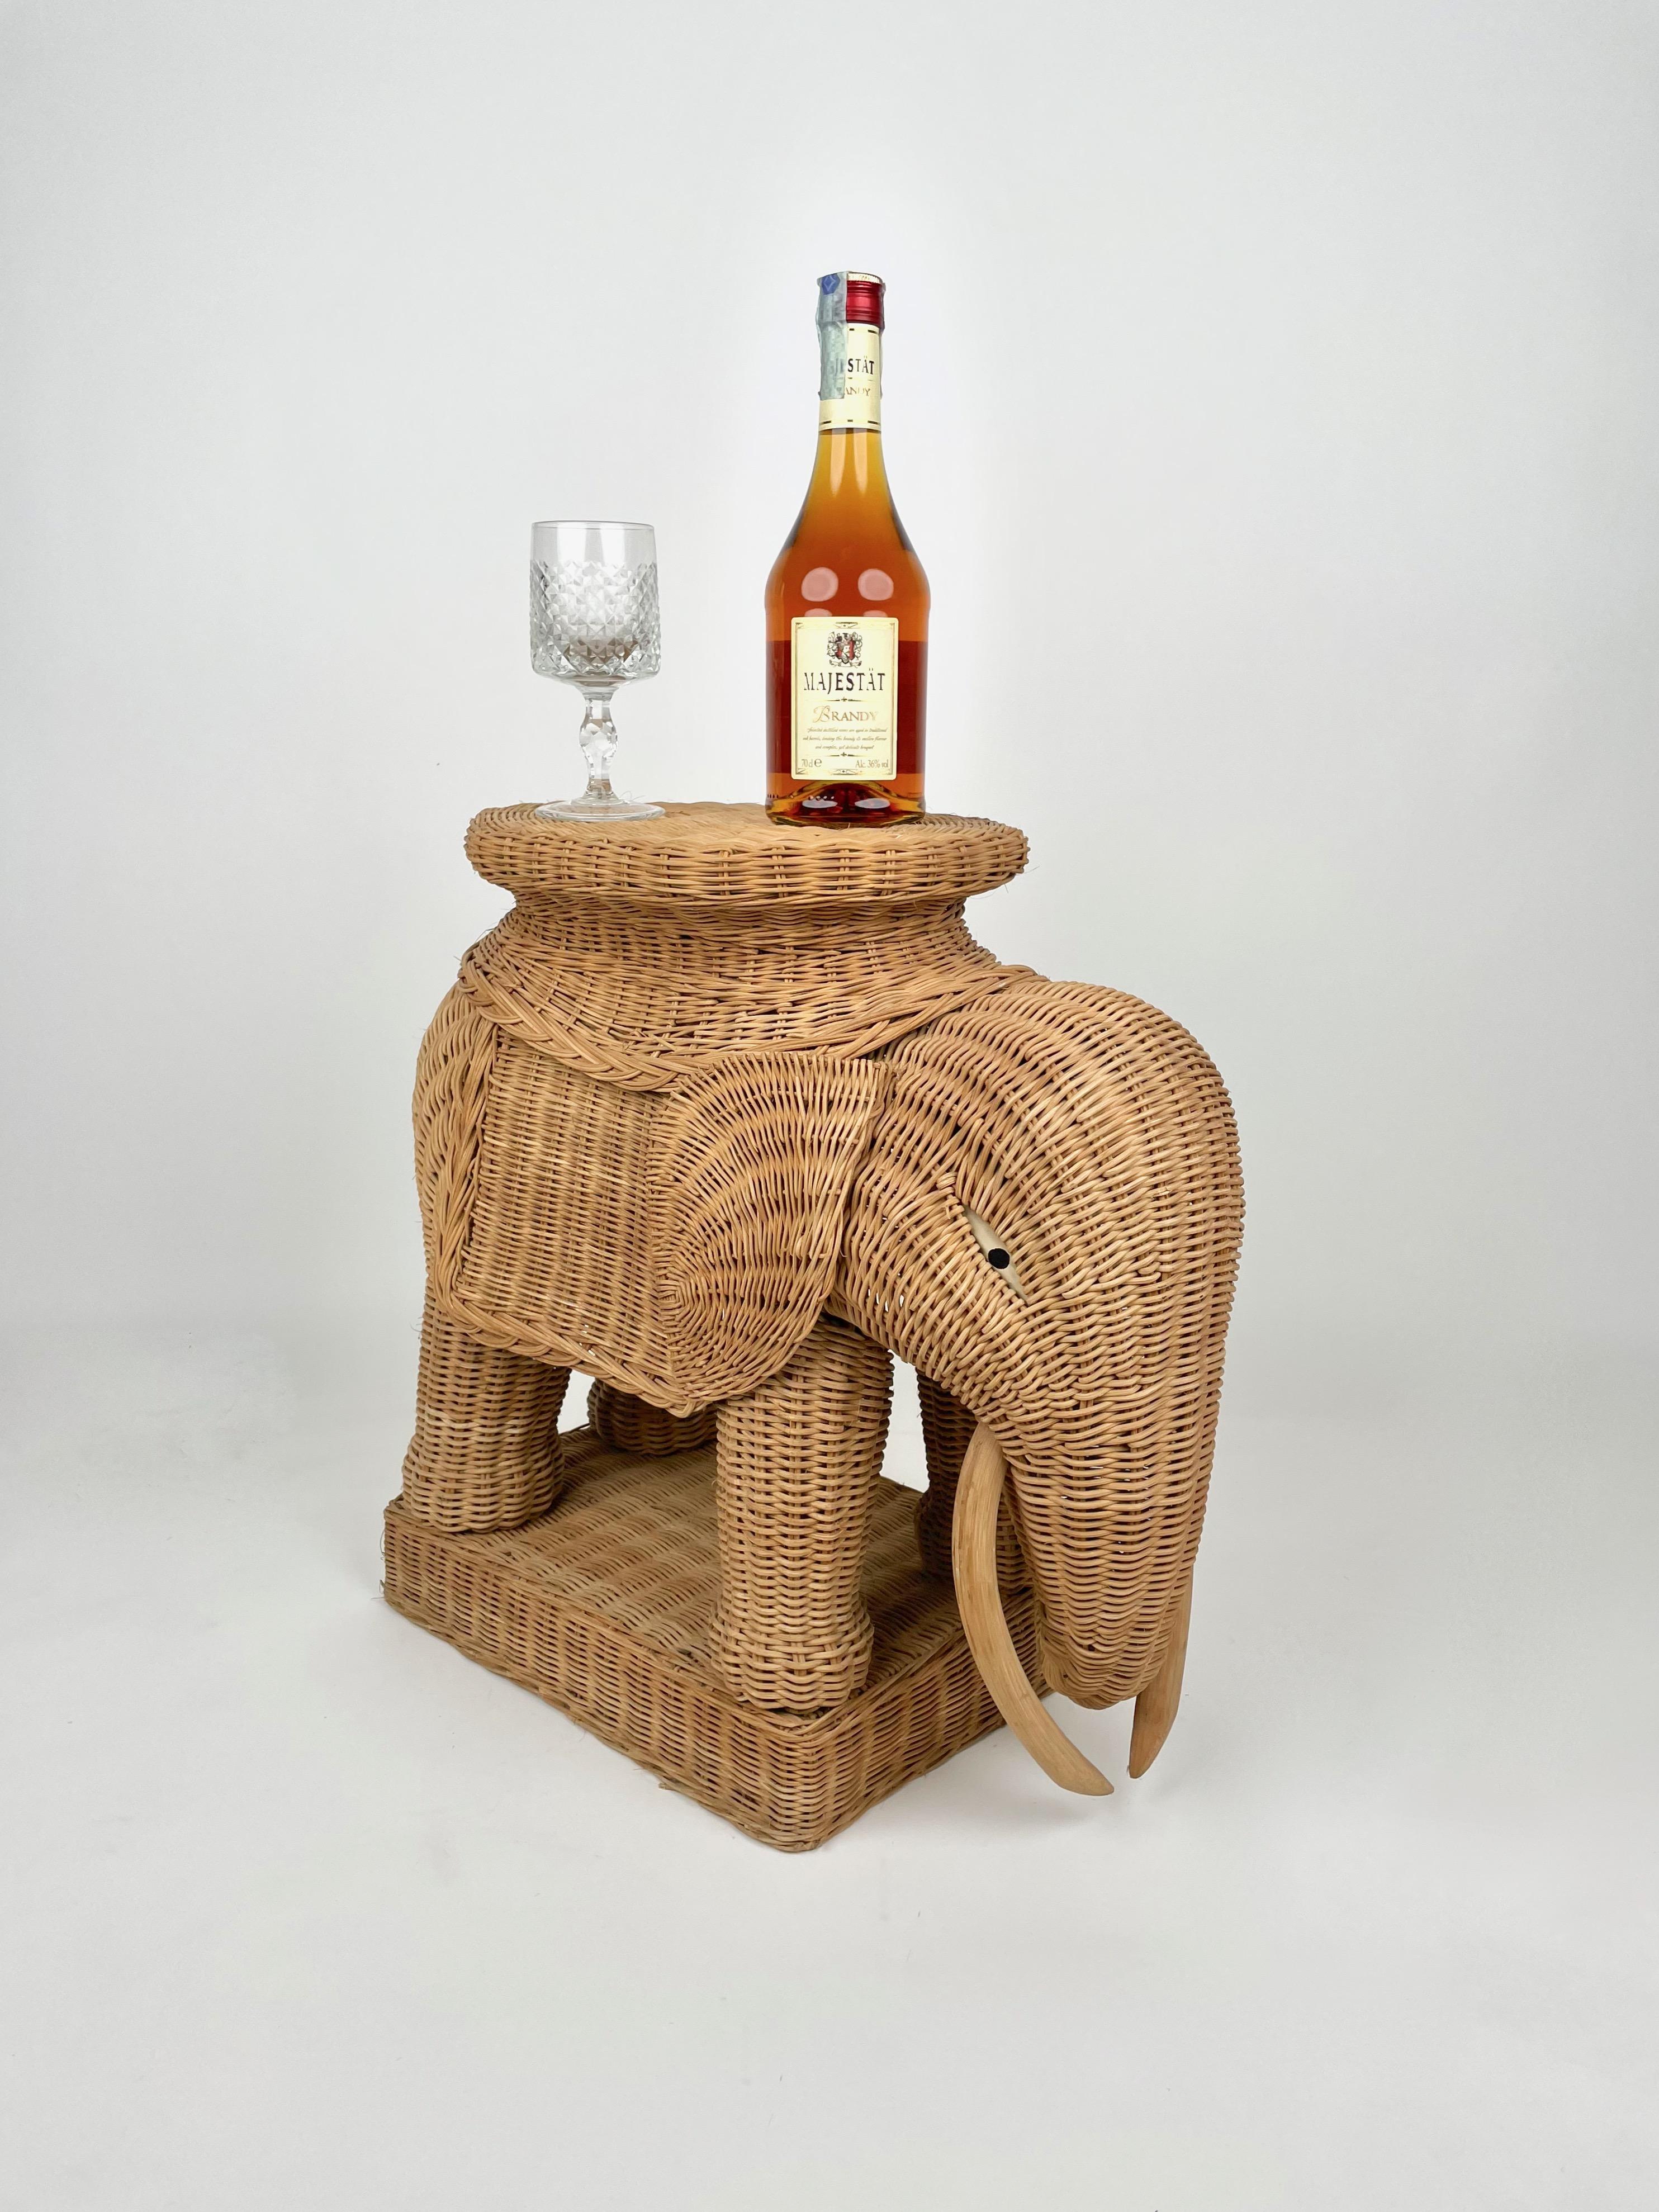 Rattan Wicker Elephant Side Coffee Table, France, 1960s 2